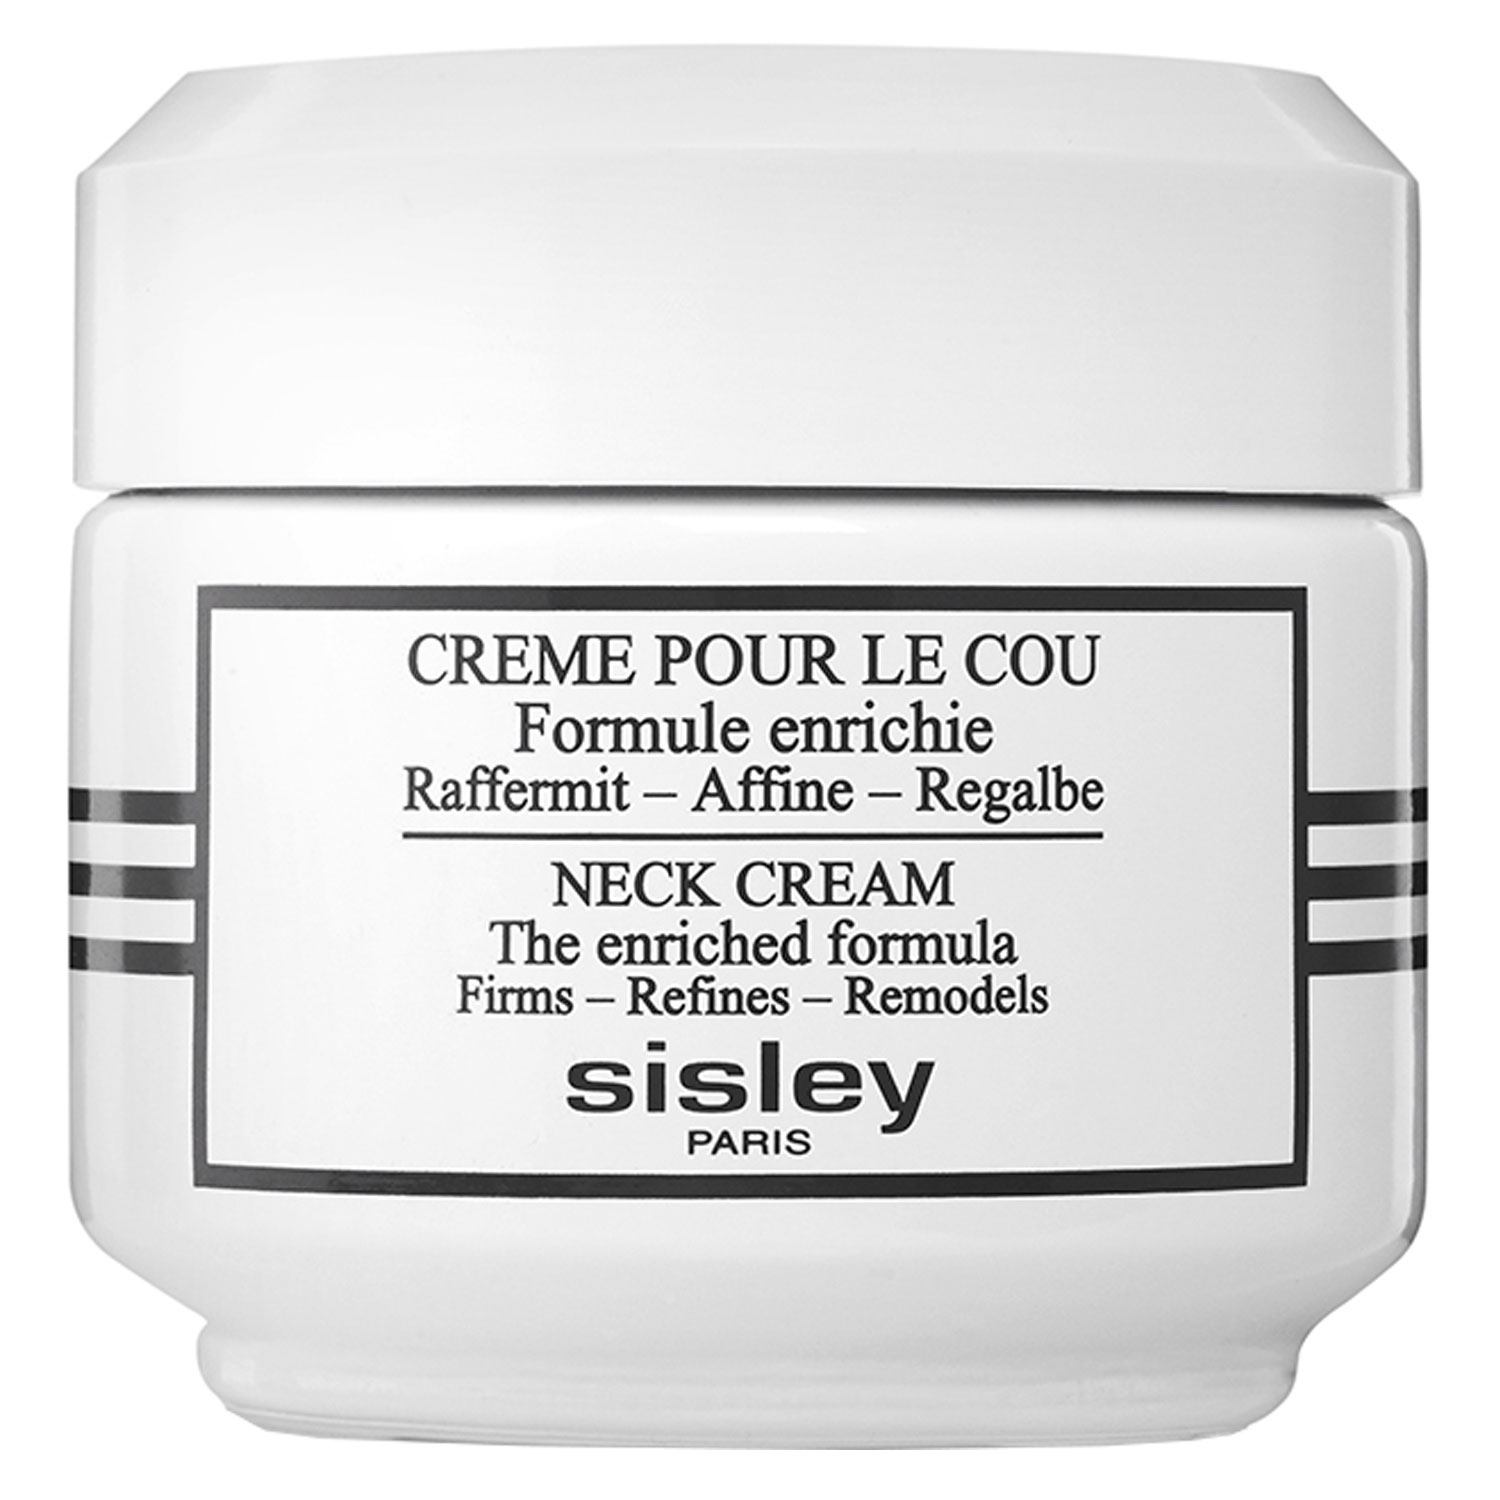 Product image from Sisley Skincare - Crème pour le Cou Formule Enrichie